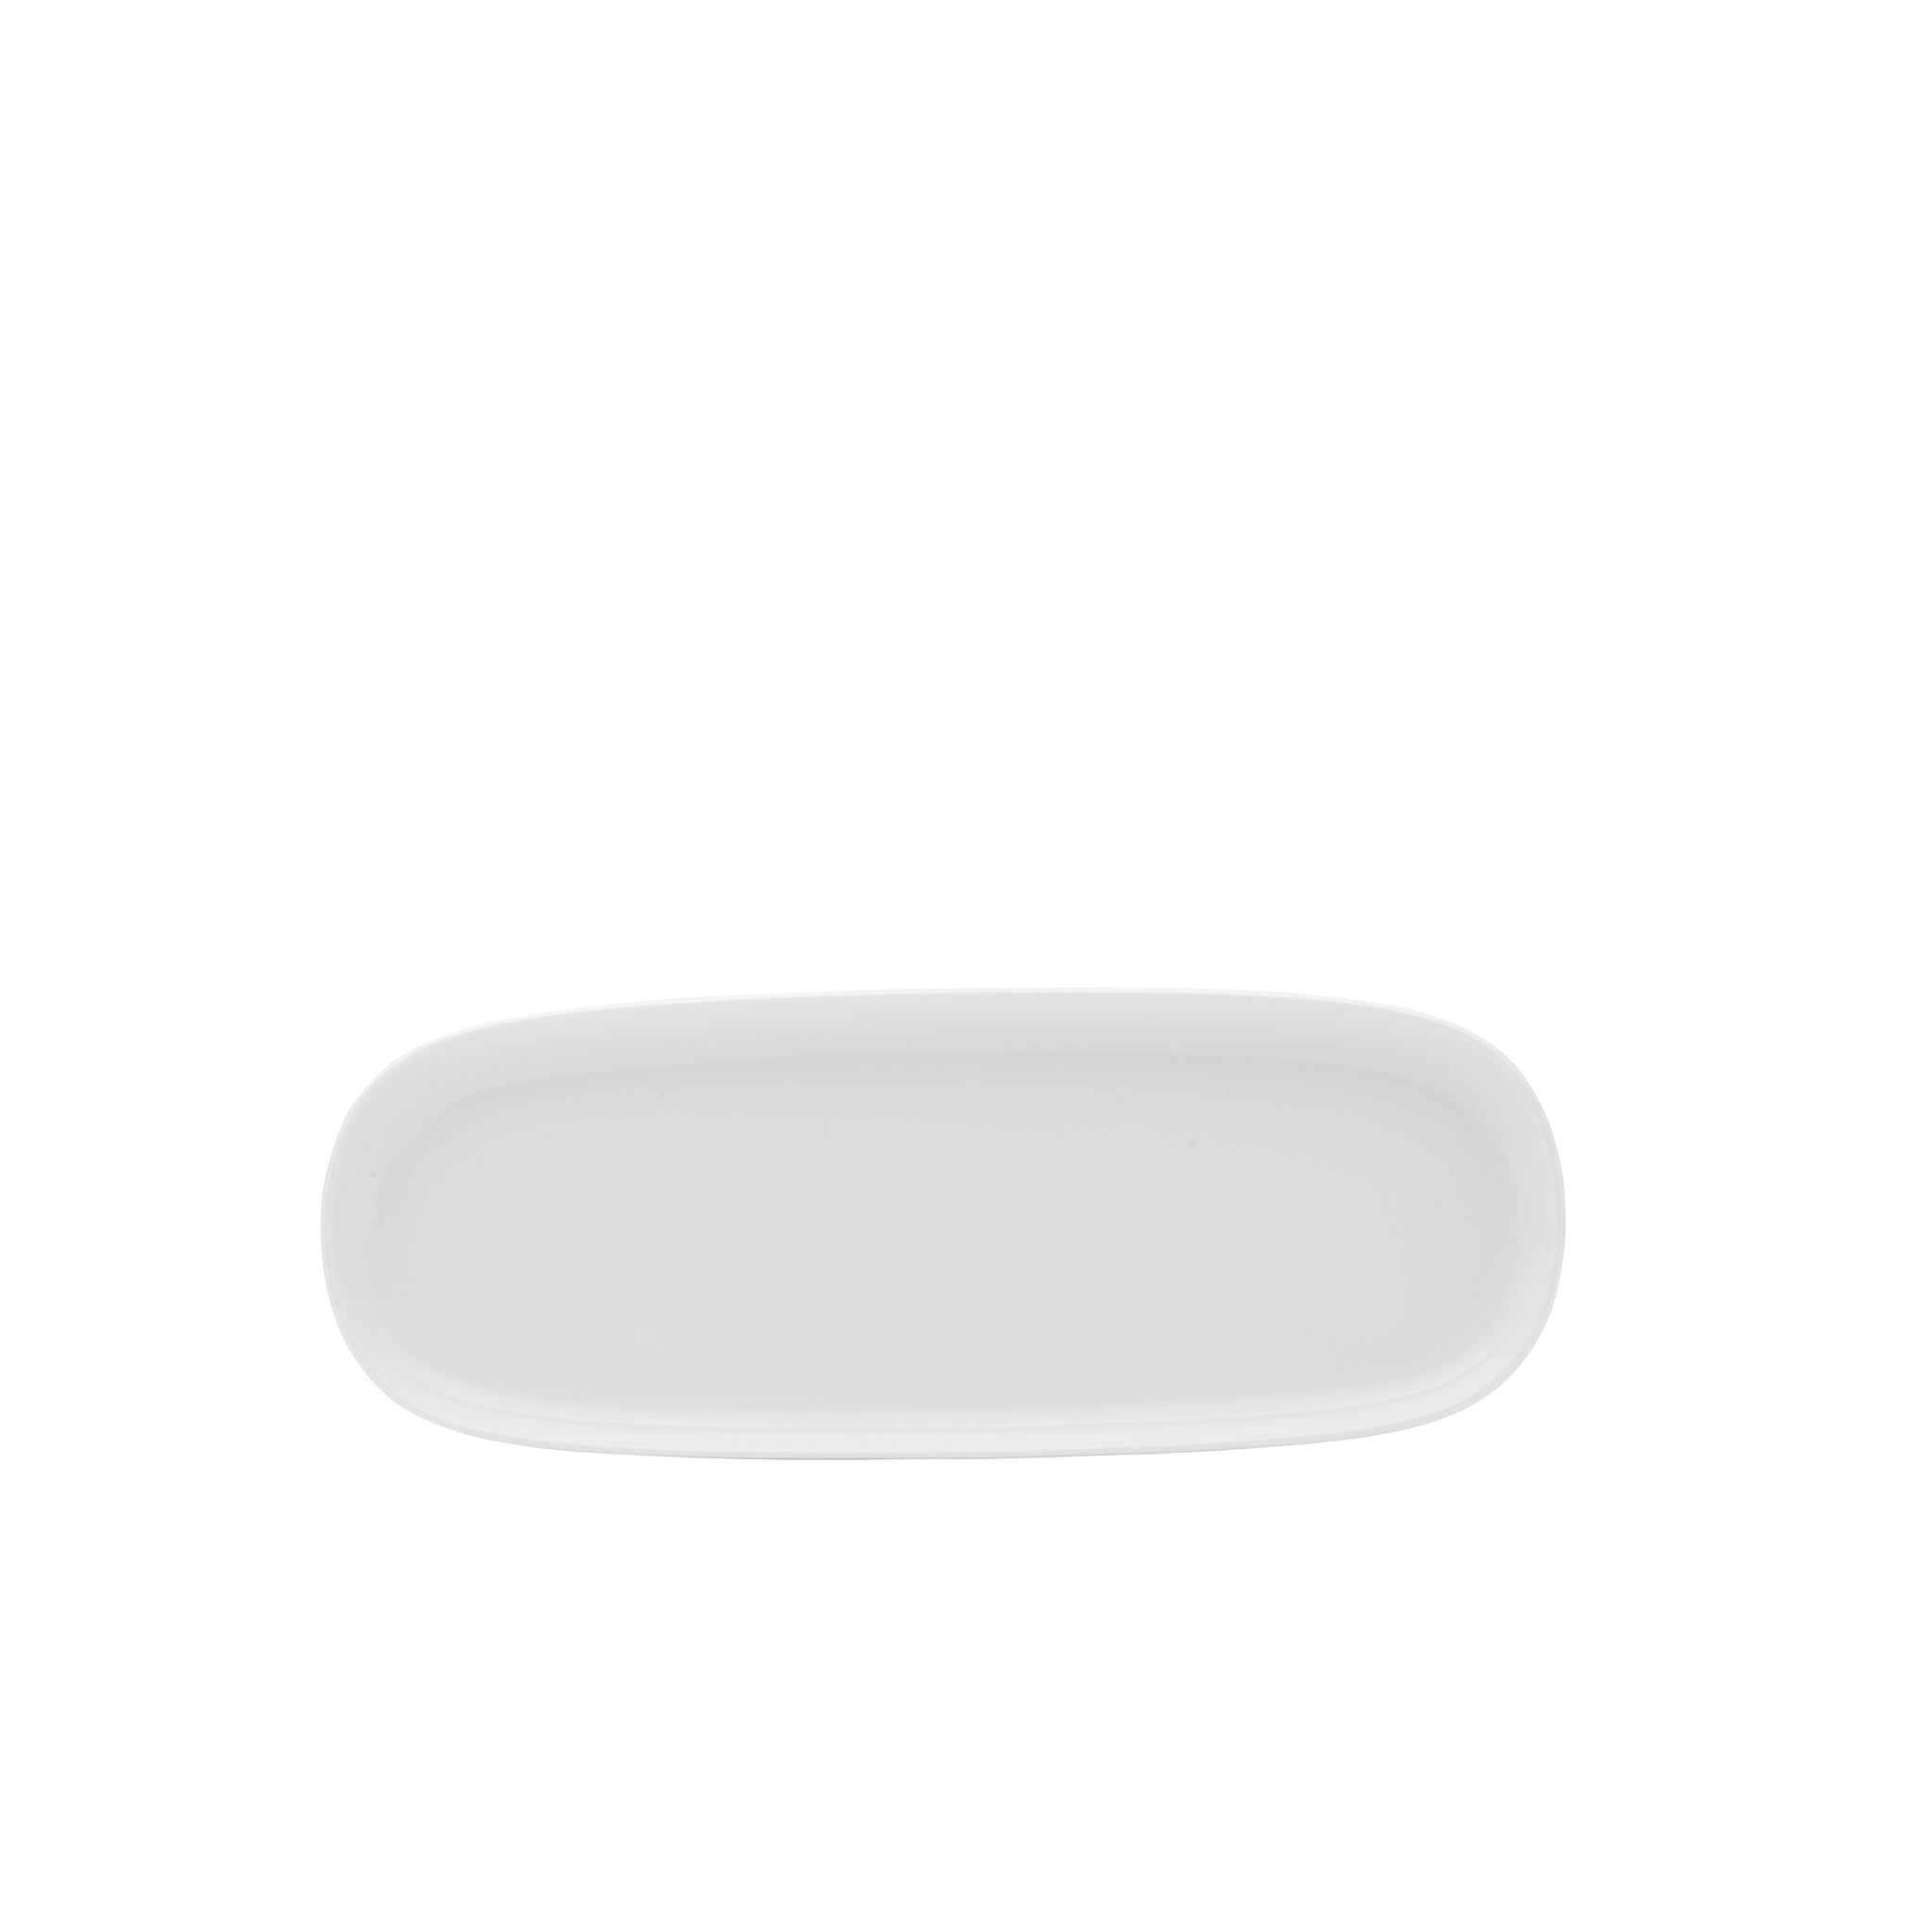 Isla Porcelain Rectangular Platter 14x5" Bright White